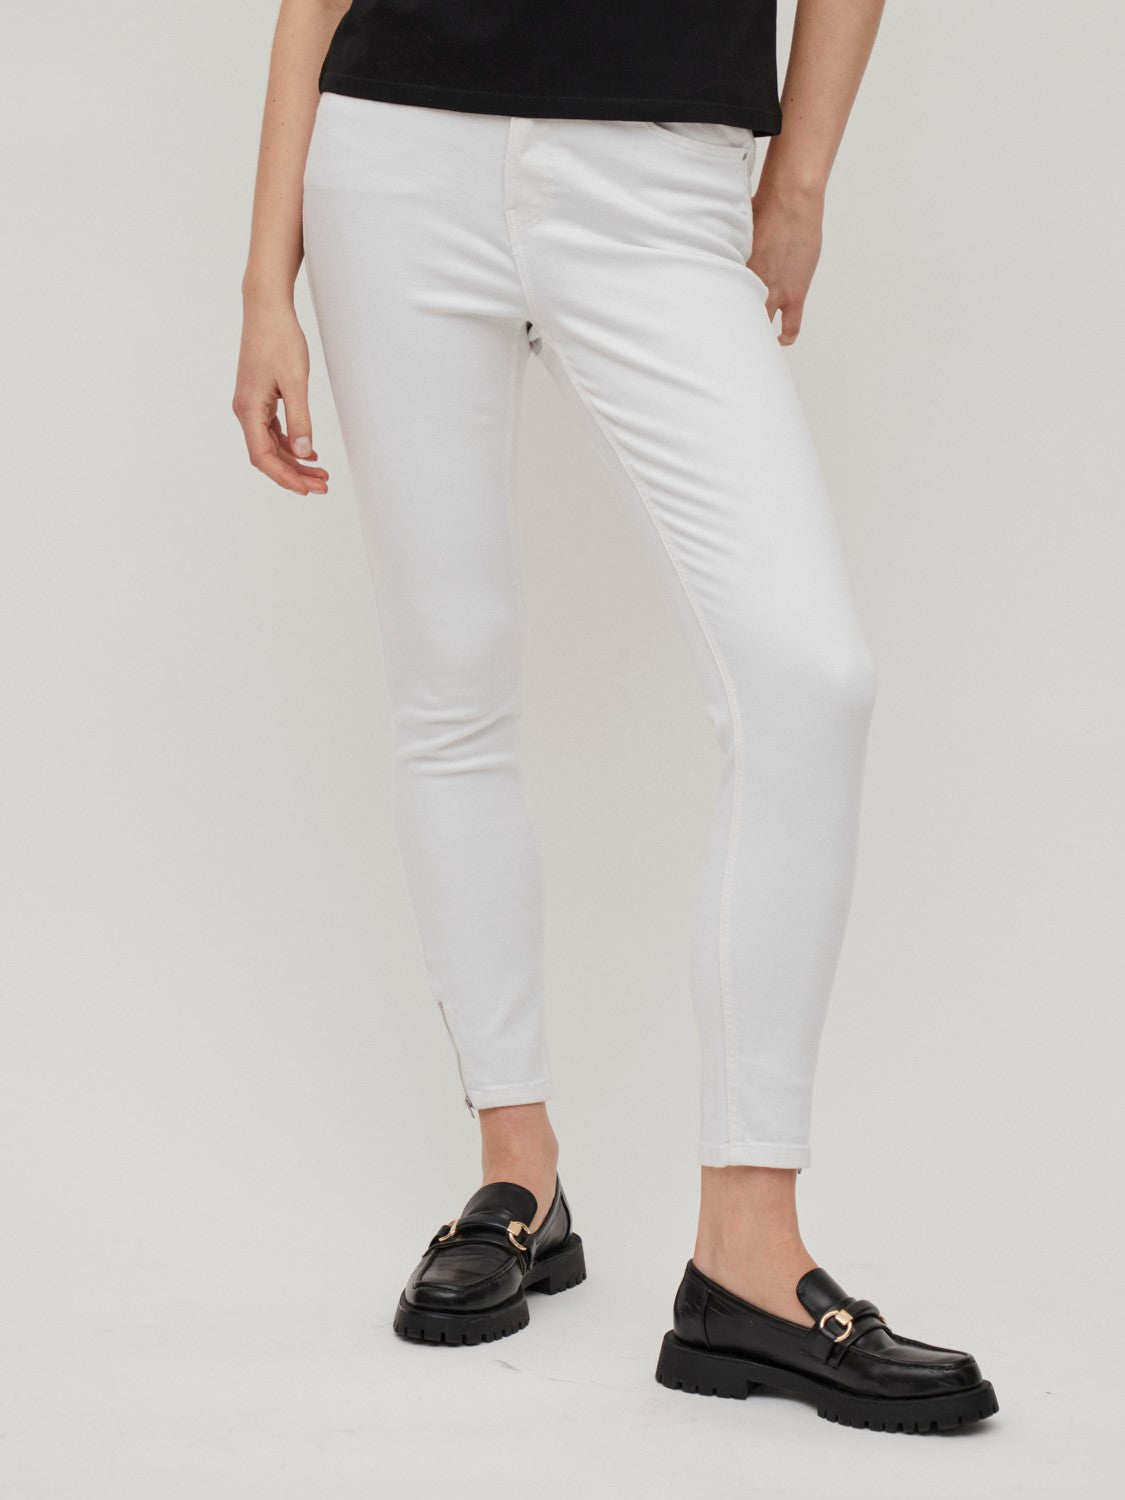 Kayla 7/8 Skinny Jeans (Vintage White)